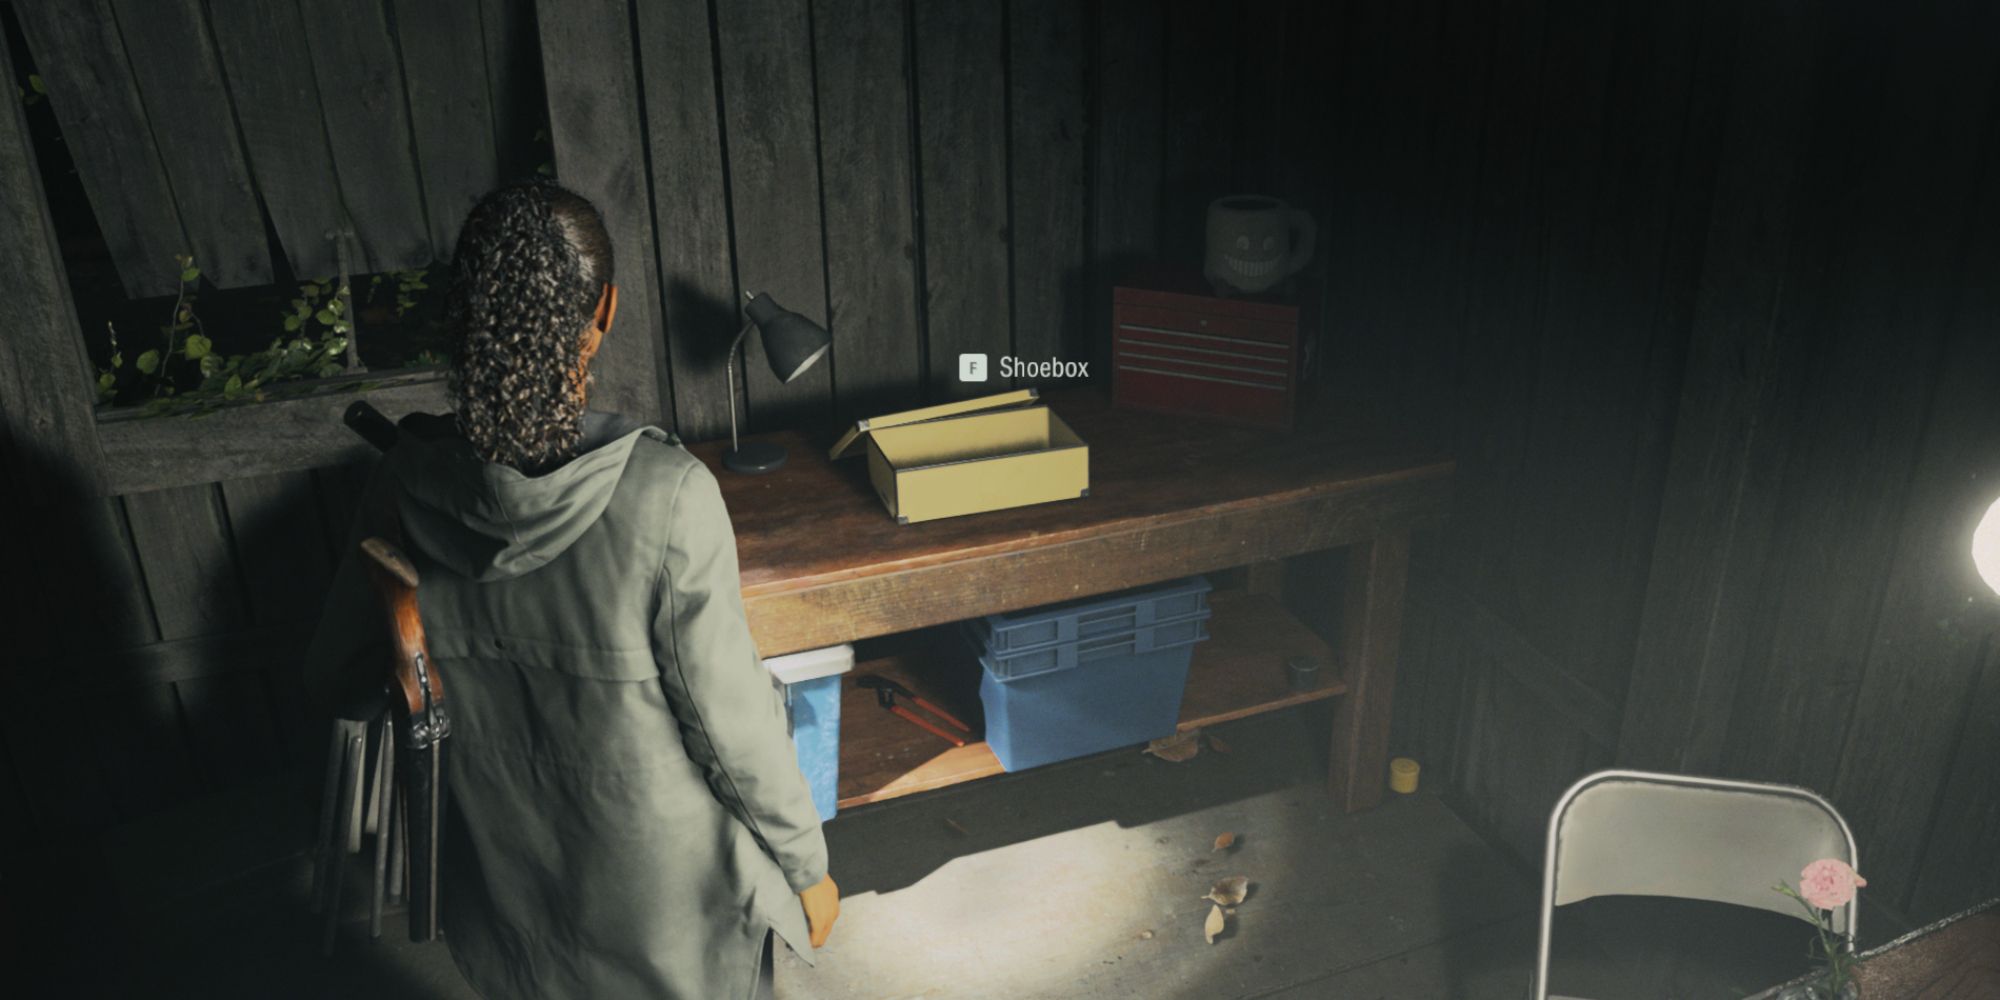 Сага Андерсон хранит свой лишний инвентарь в коробке из-под обуви в Alan Wake 2